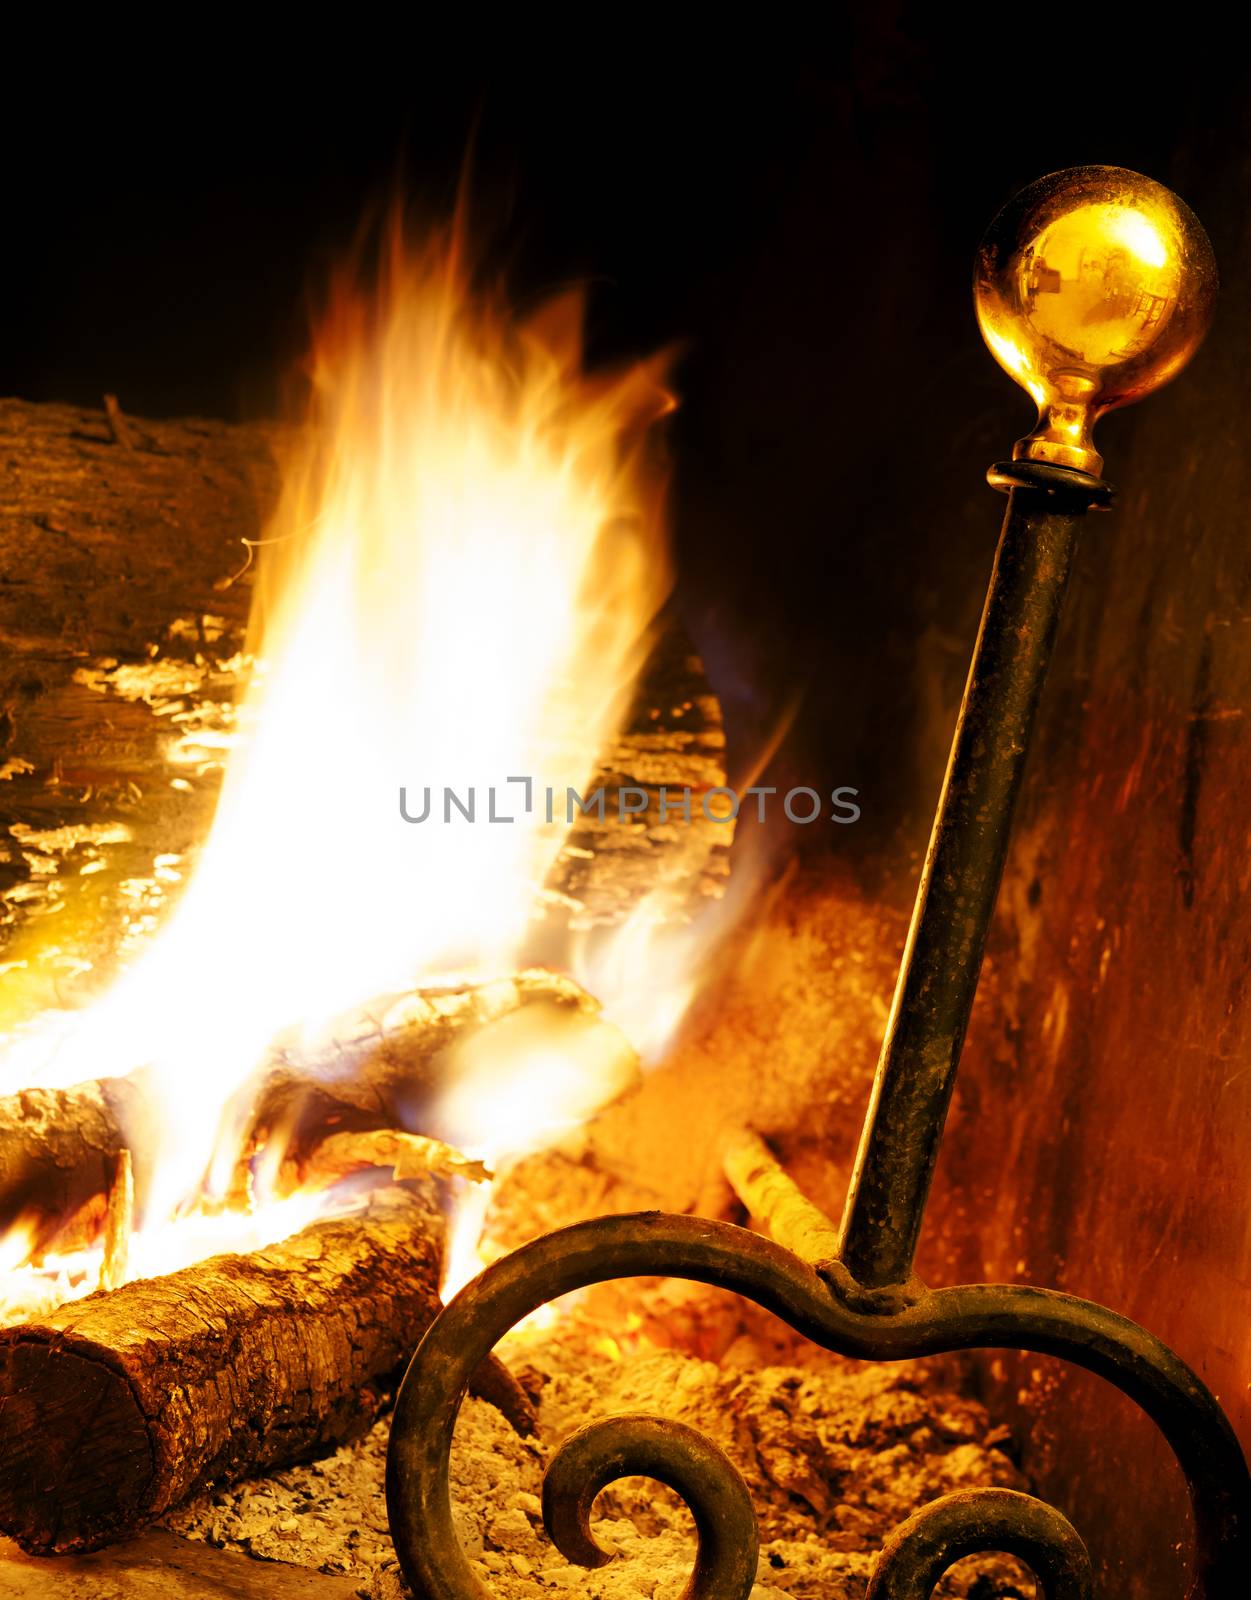  fireplace by carloscastilla